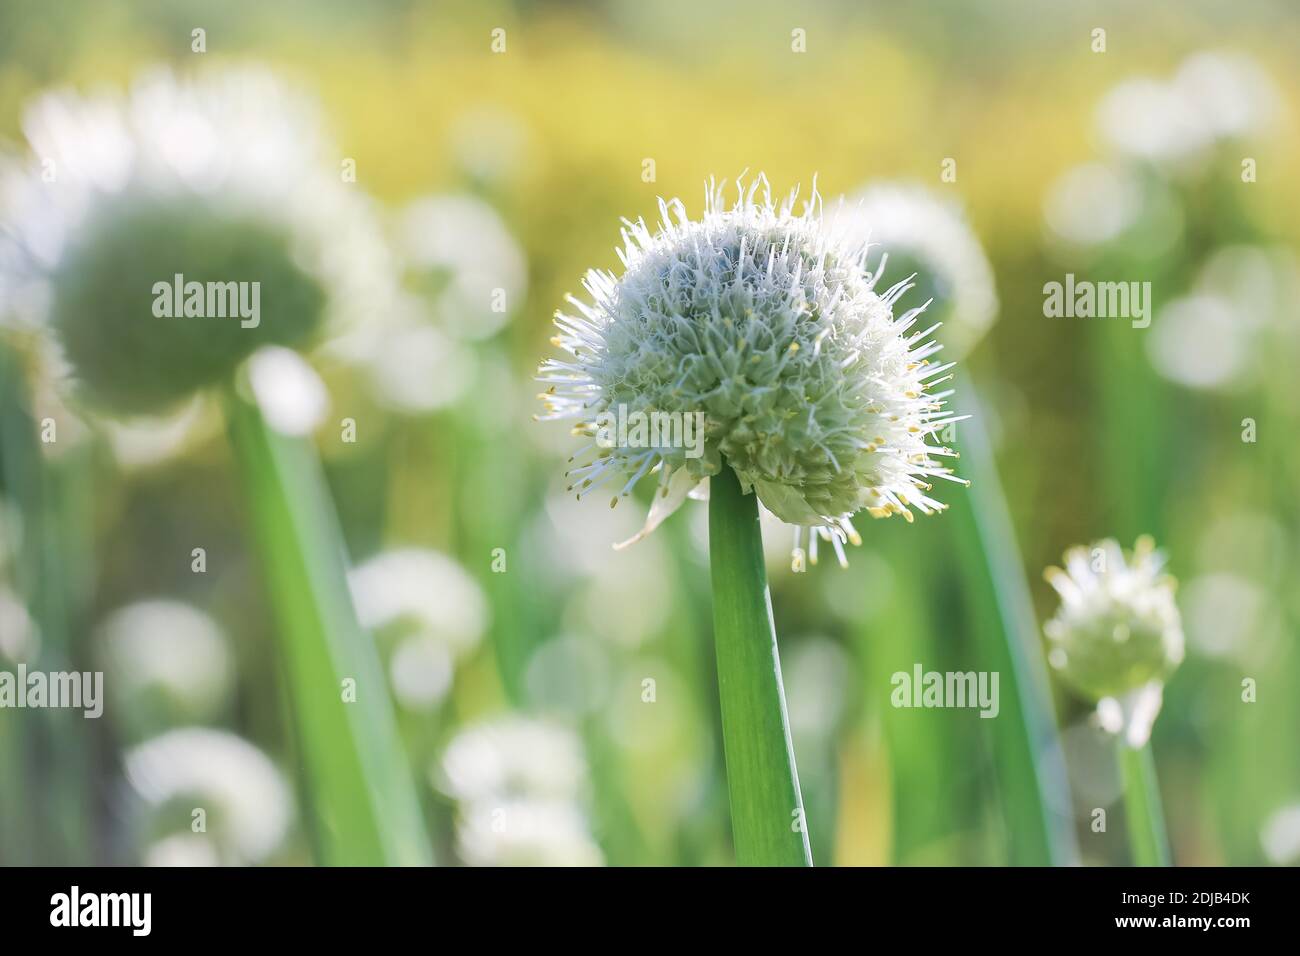 Blooming white Alium, macro, closeup, summer background Stock Photo